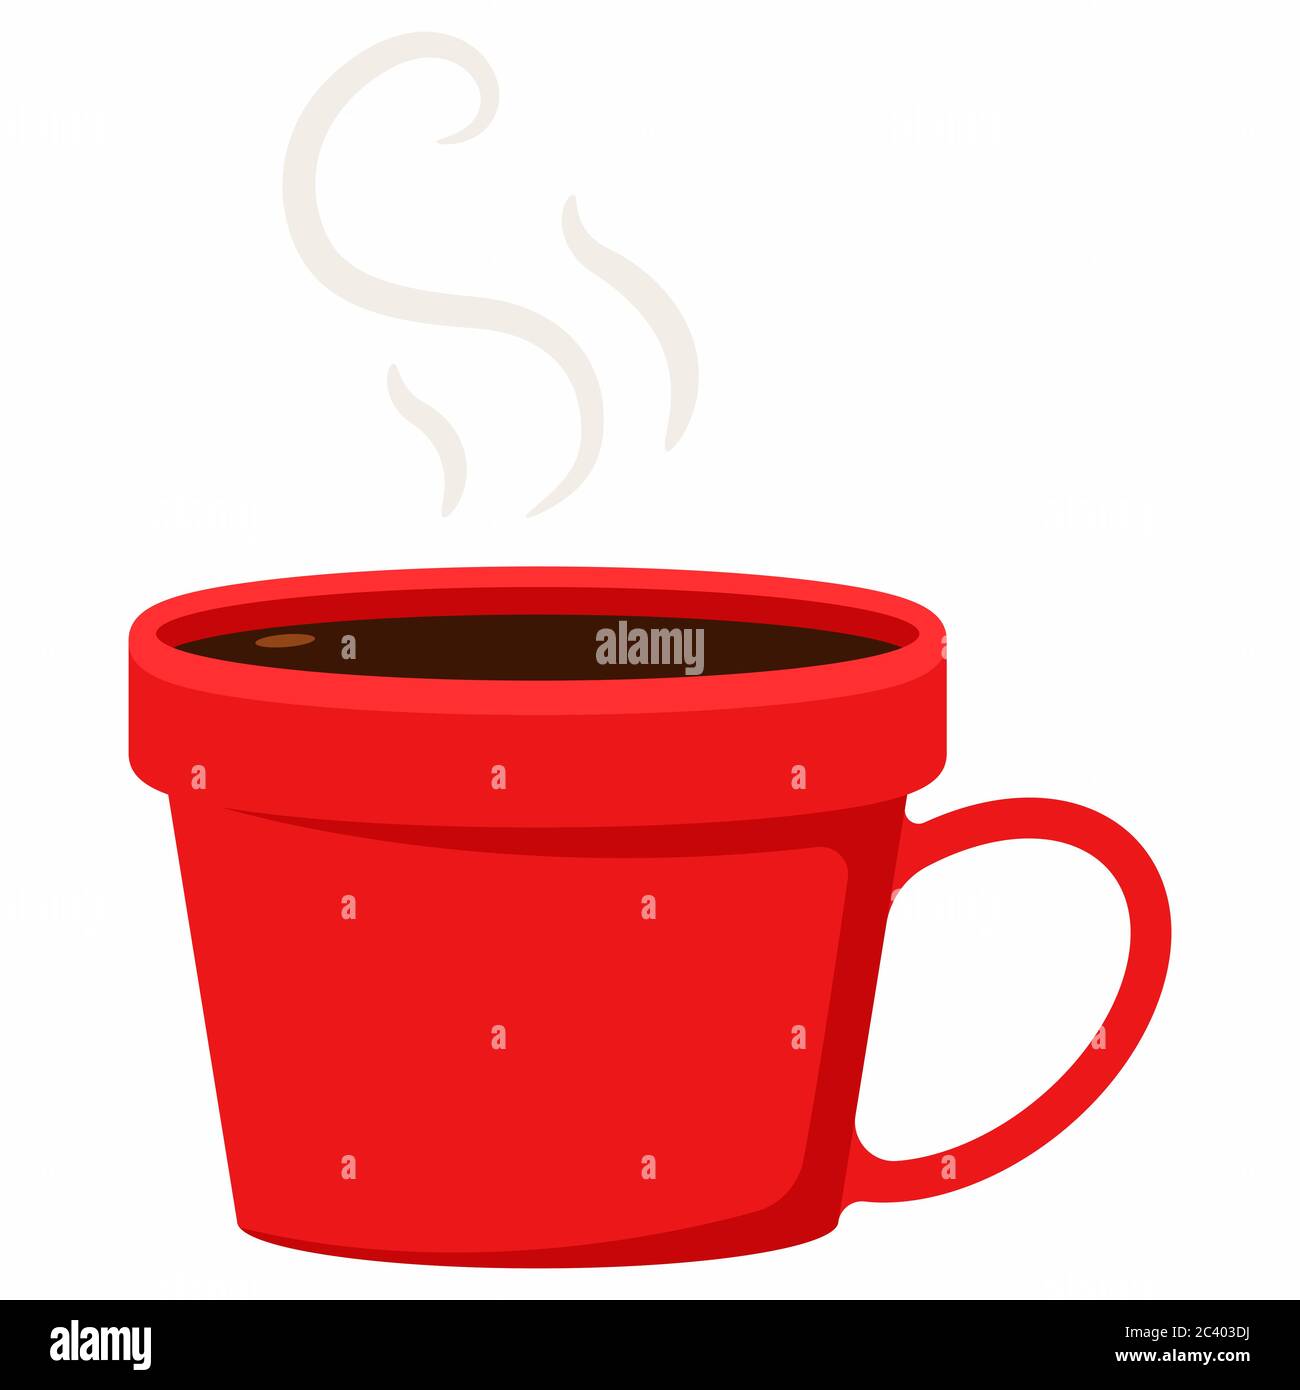 Rote Tasse heißen Kaffee Vektor Cartoon flache Illustration isoliert auf einem weißen Hintergrund. Stock Vektor